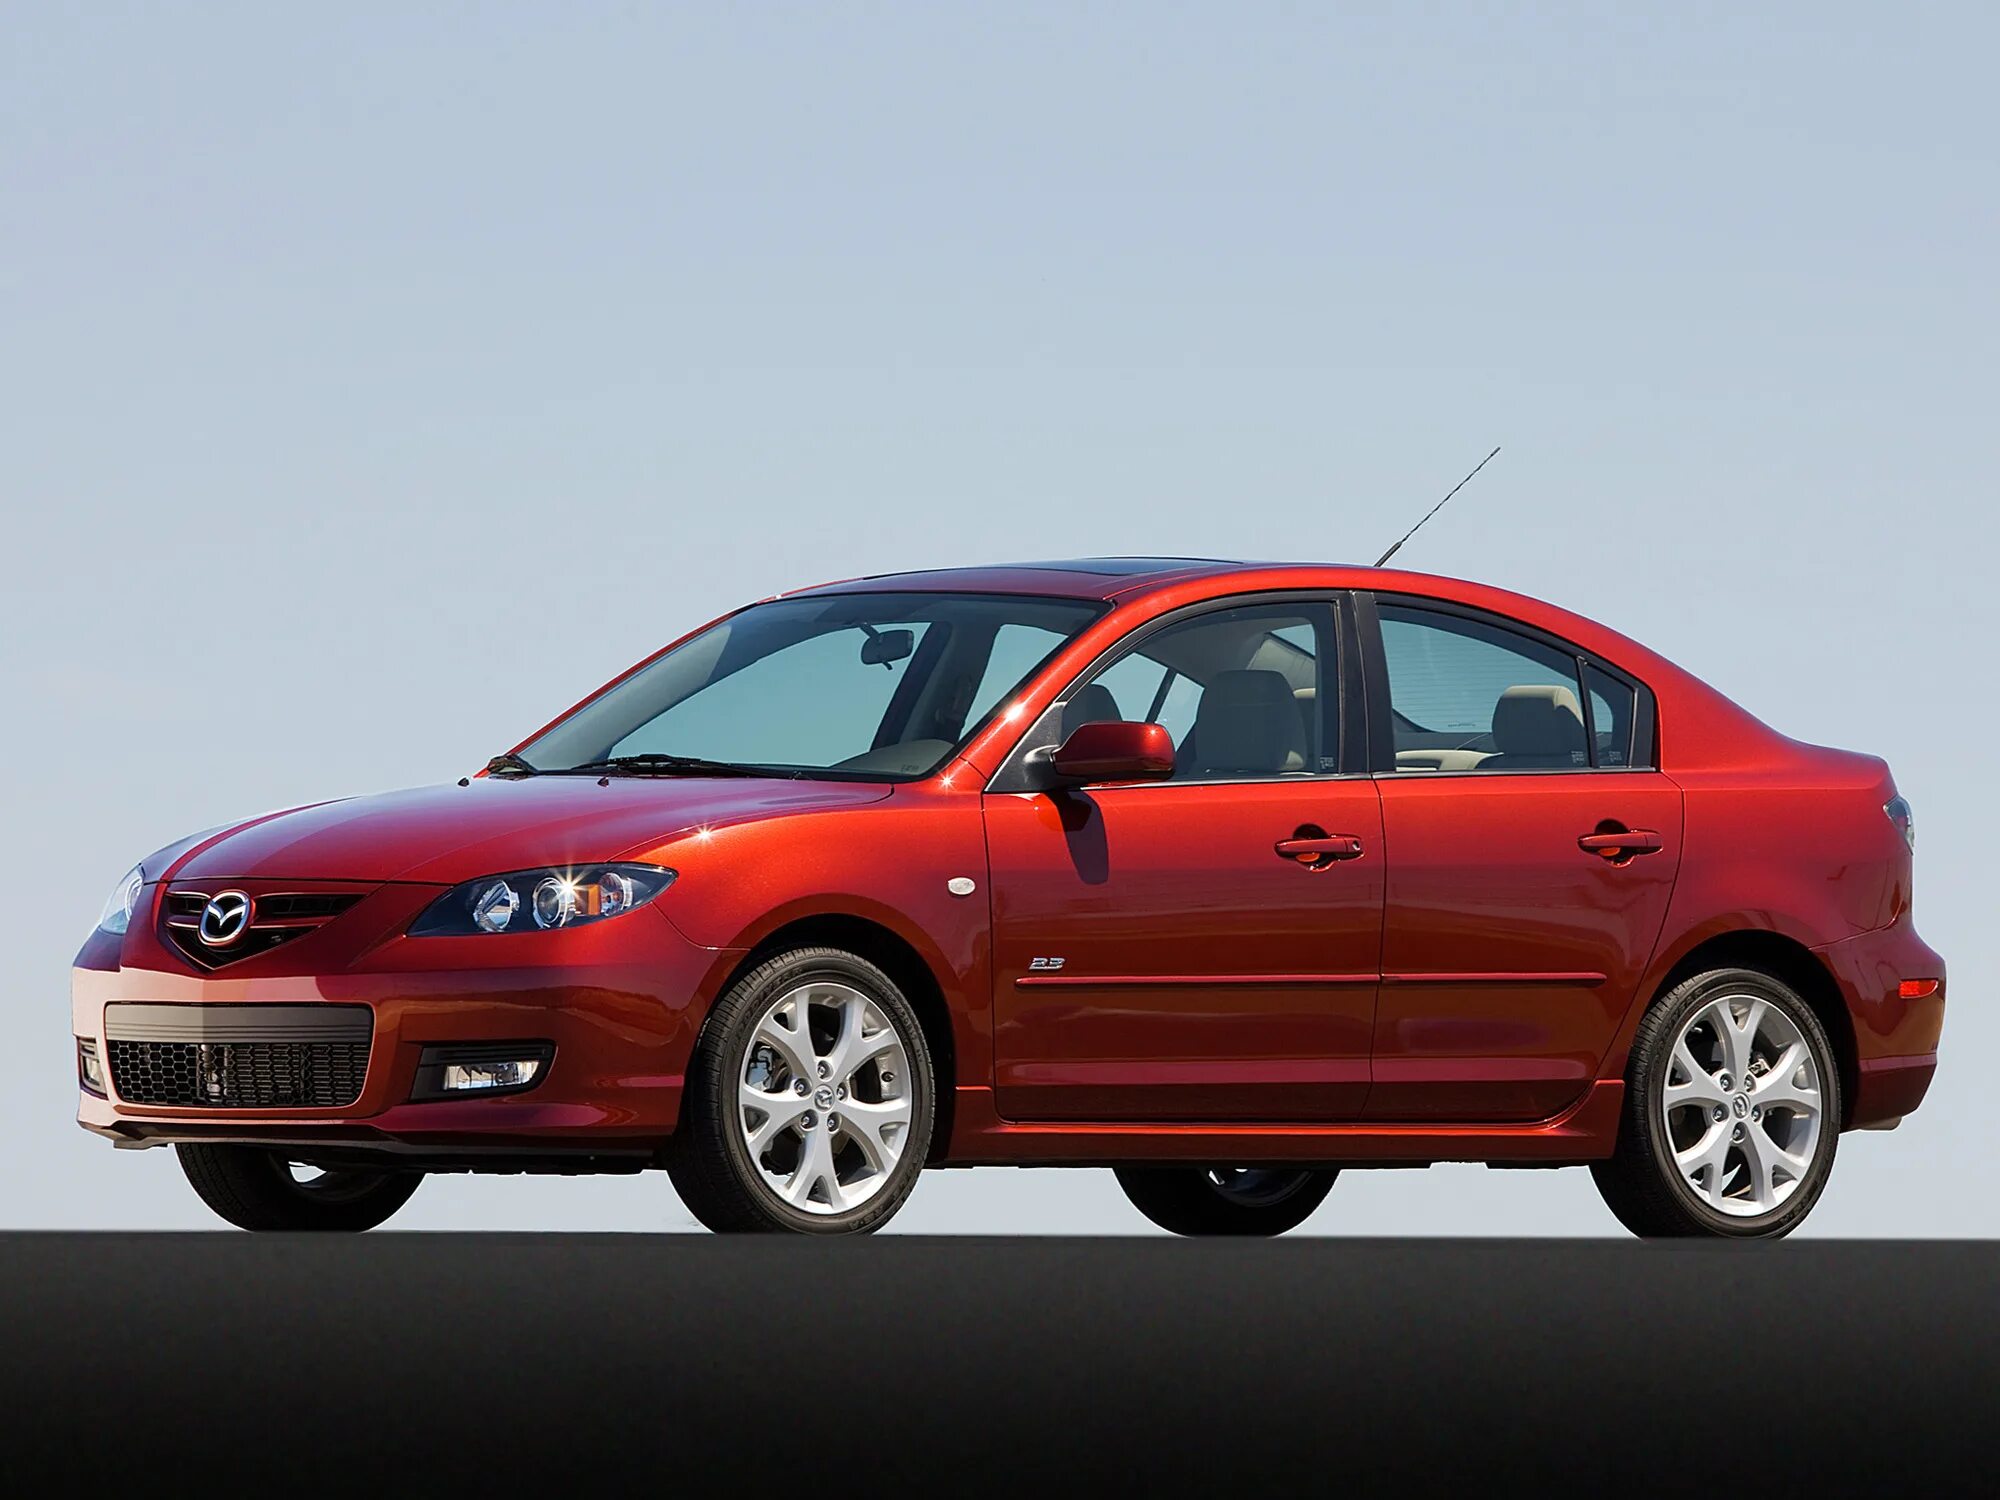 Mazda 3 BK седан. Мазда 3 2006 BK седан. Мазда 3 ББК седан. Mazda 3 BK Sport sedan. Mazda 3 bk 2009